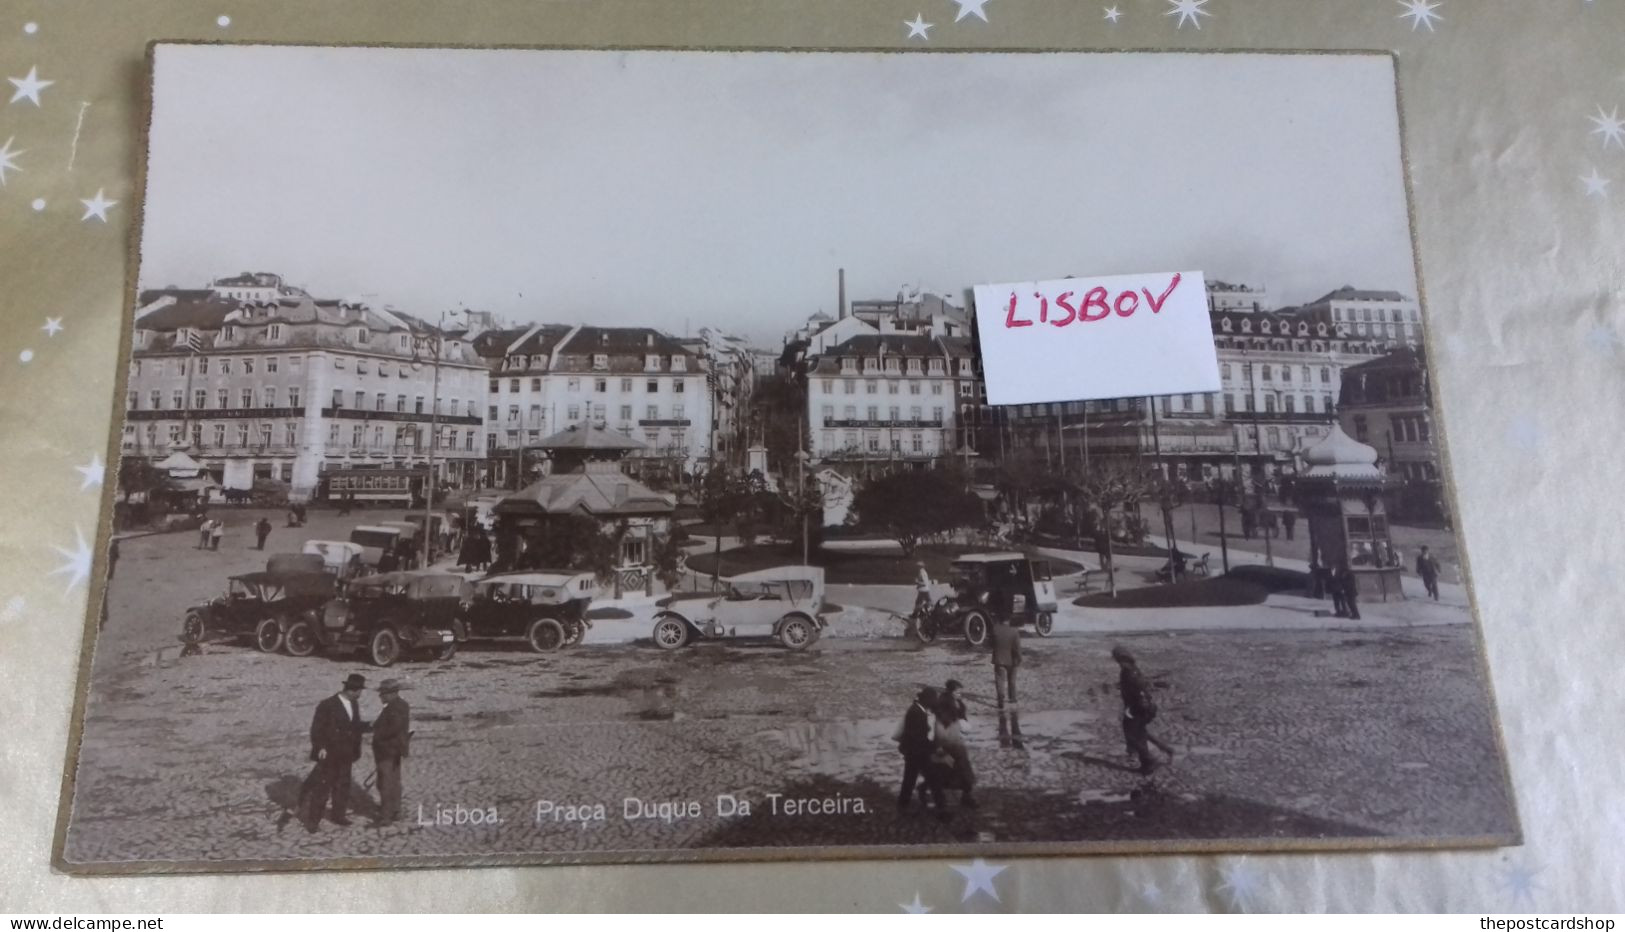 LISBOA - Praça D. Duque Da Terceira. Carte Postale UNUSED - Lisboa